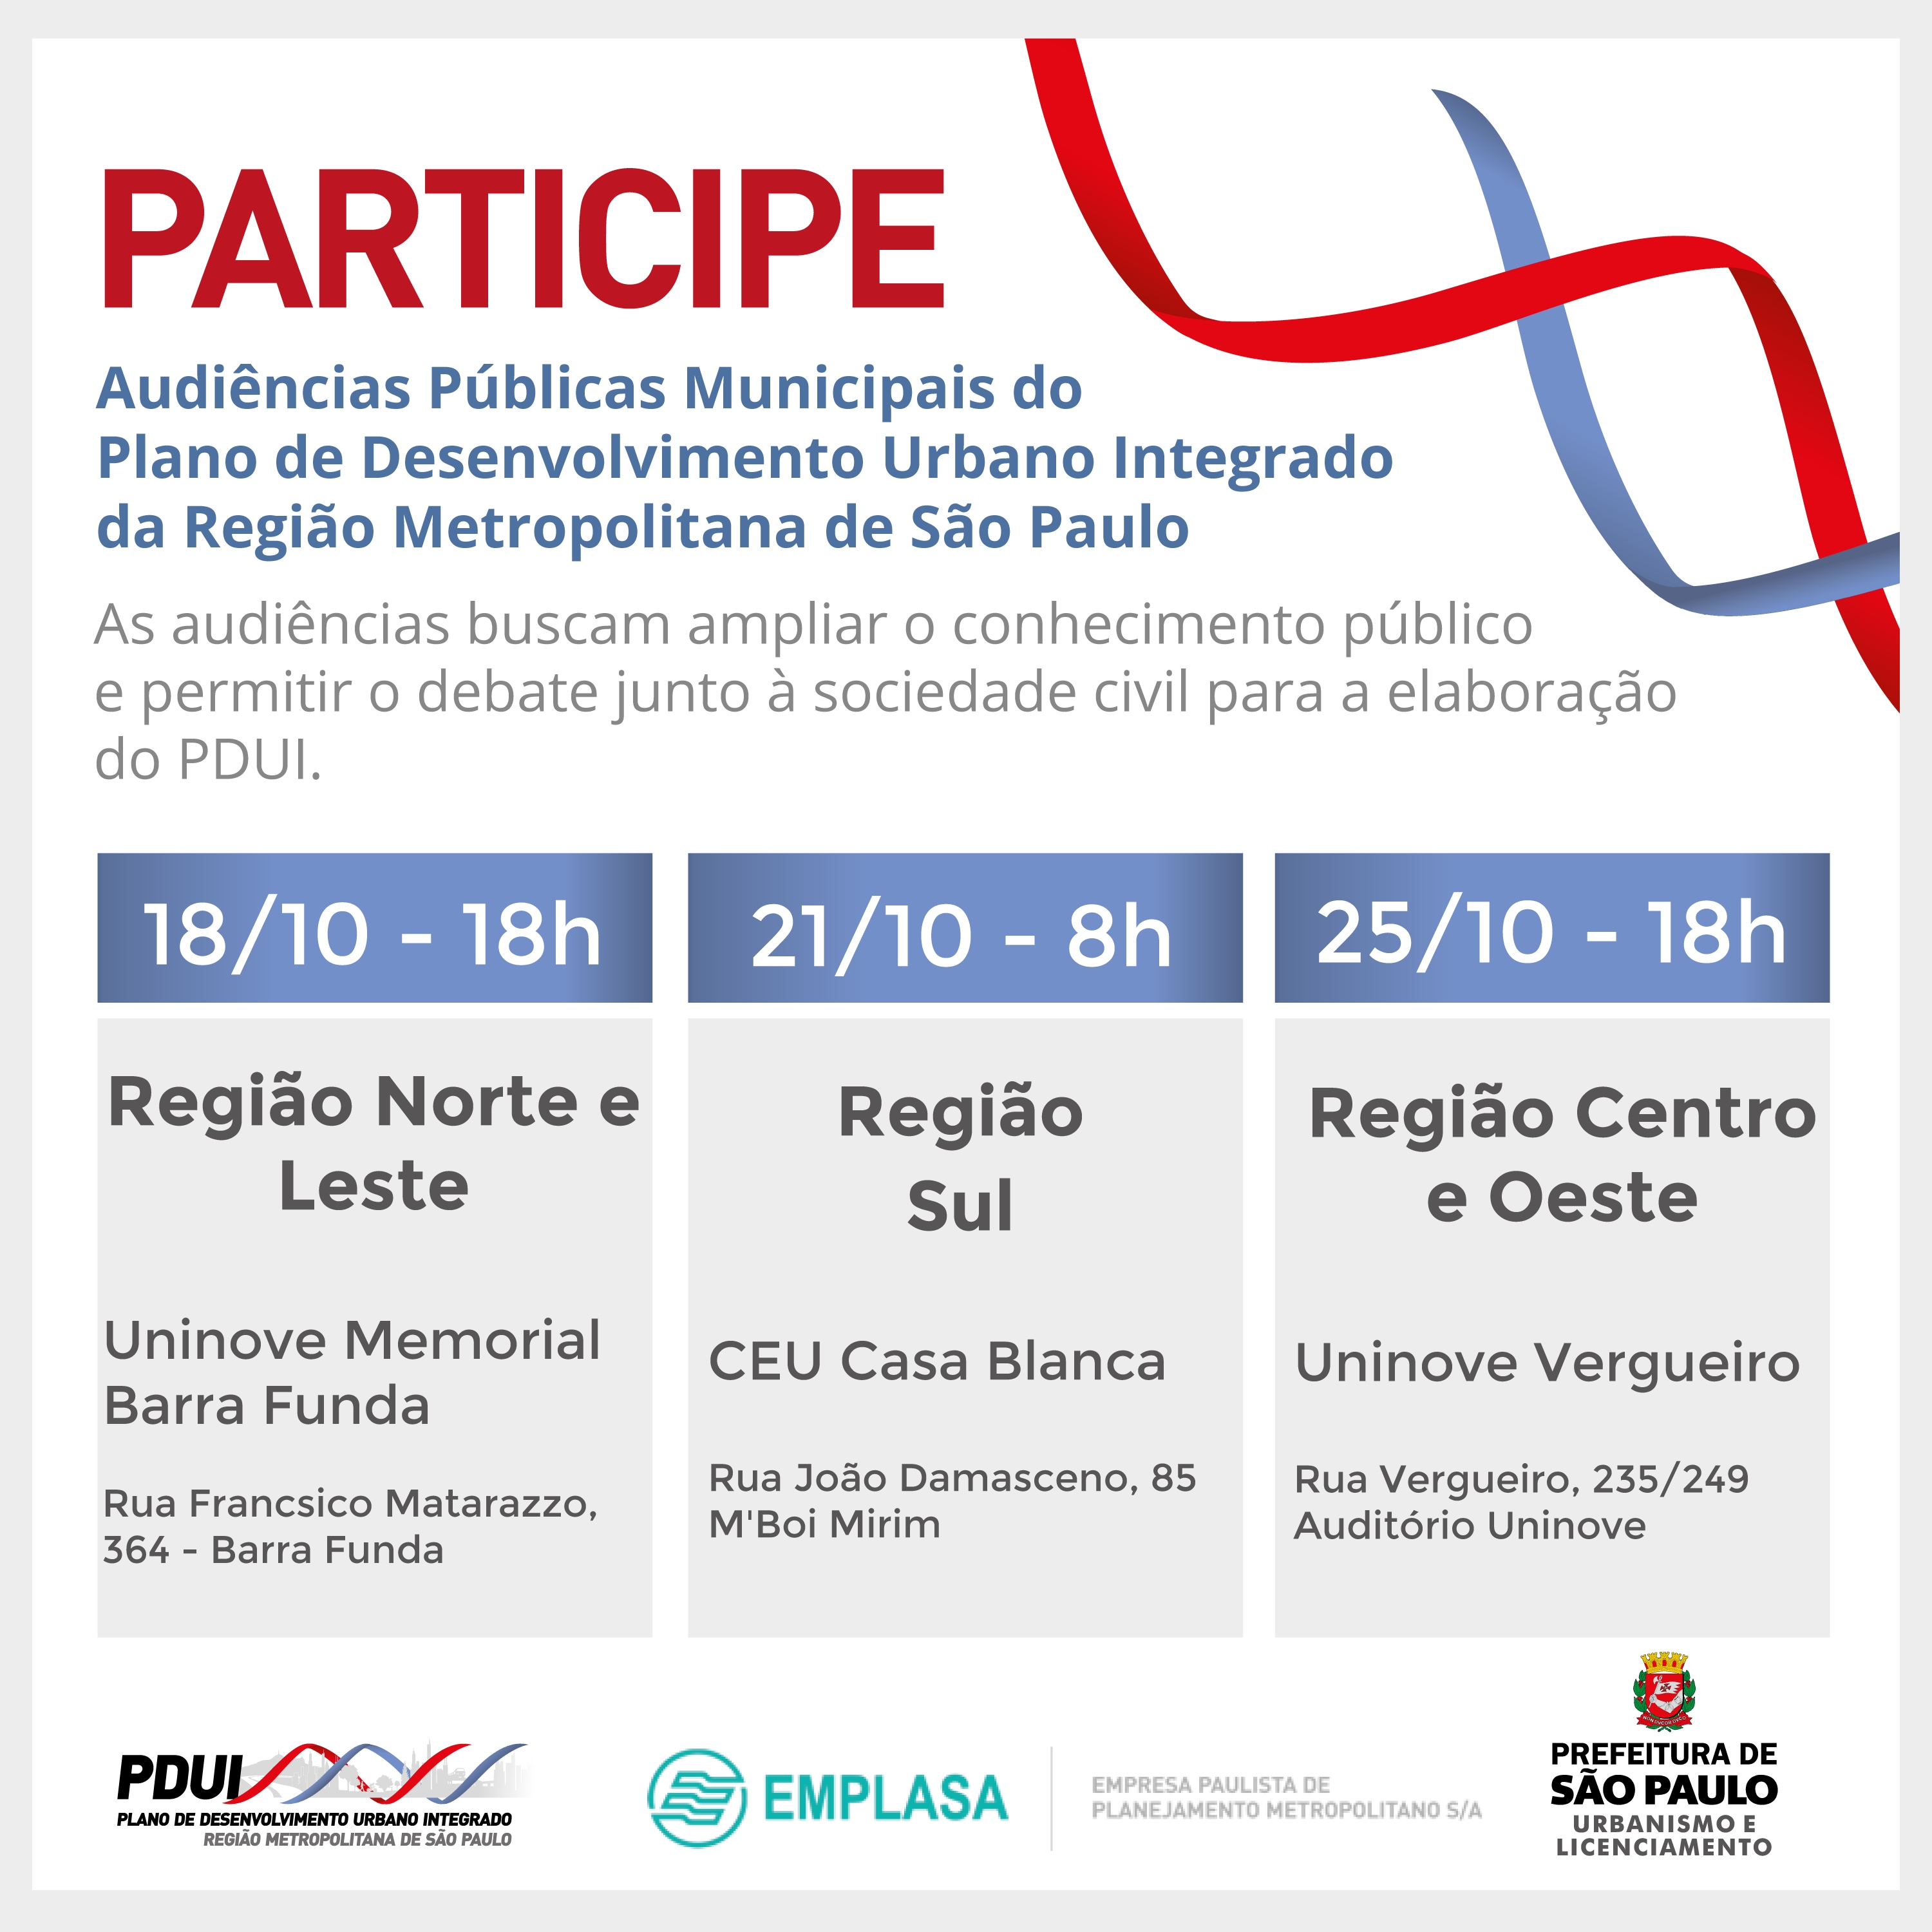 Imagem convidando a participar das audiências públicas municipais do Plano de Desenvolvimento Urbano Integrado da Região Metropolitana de São Paulo